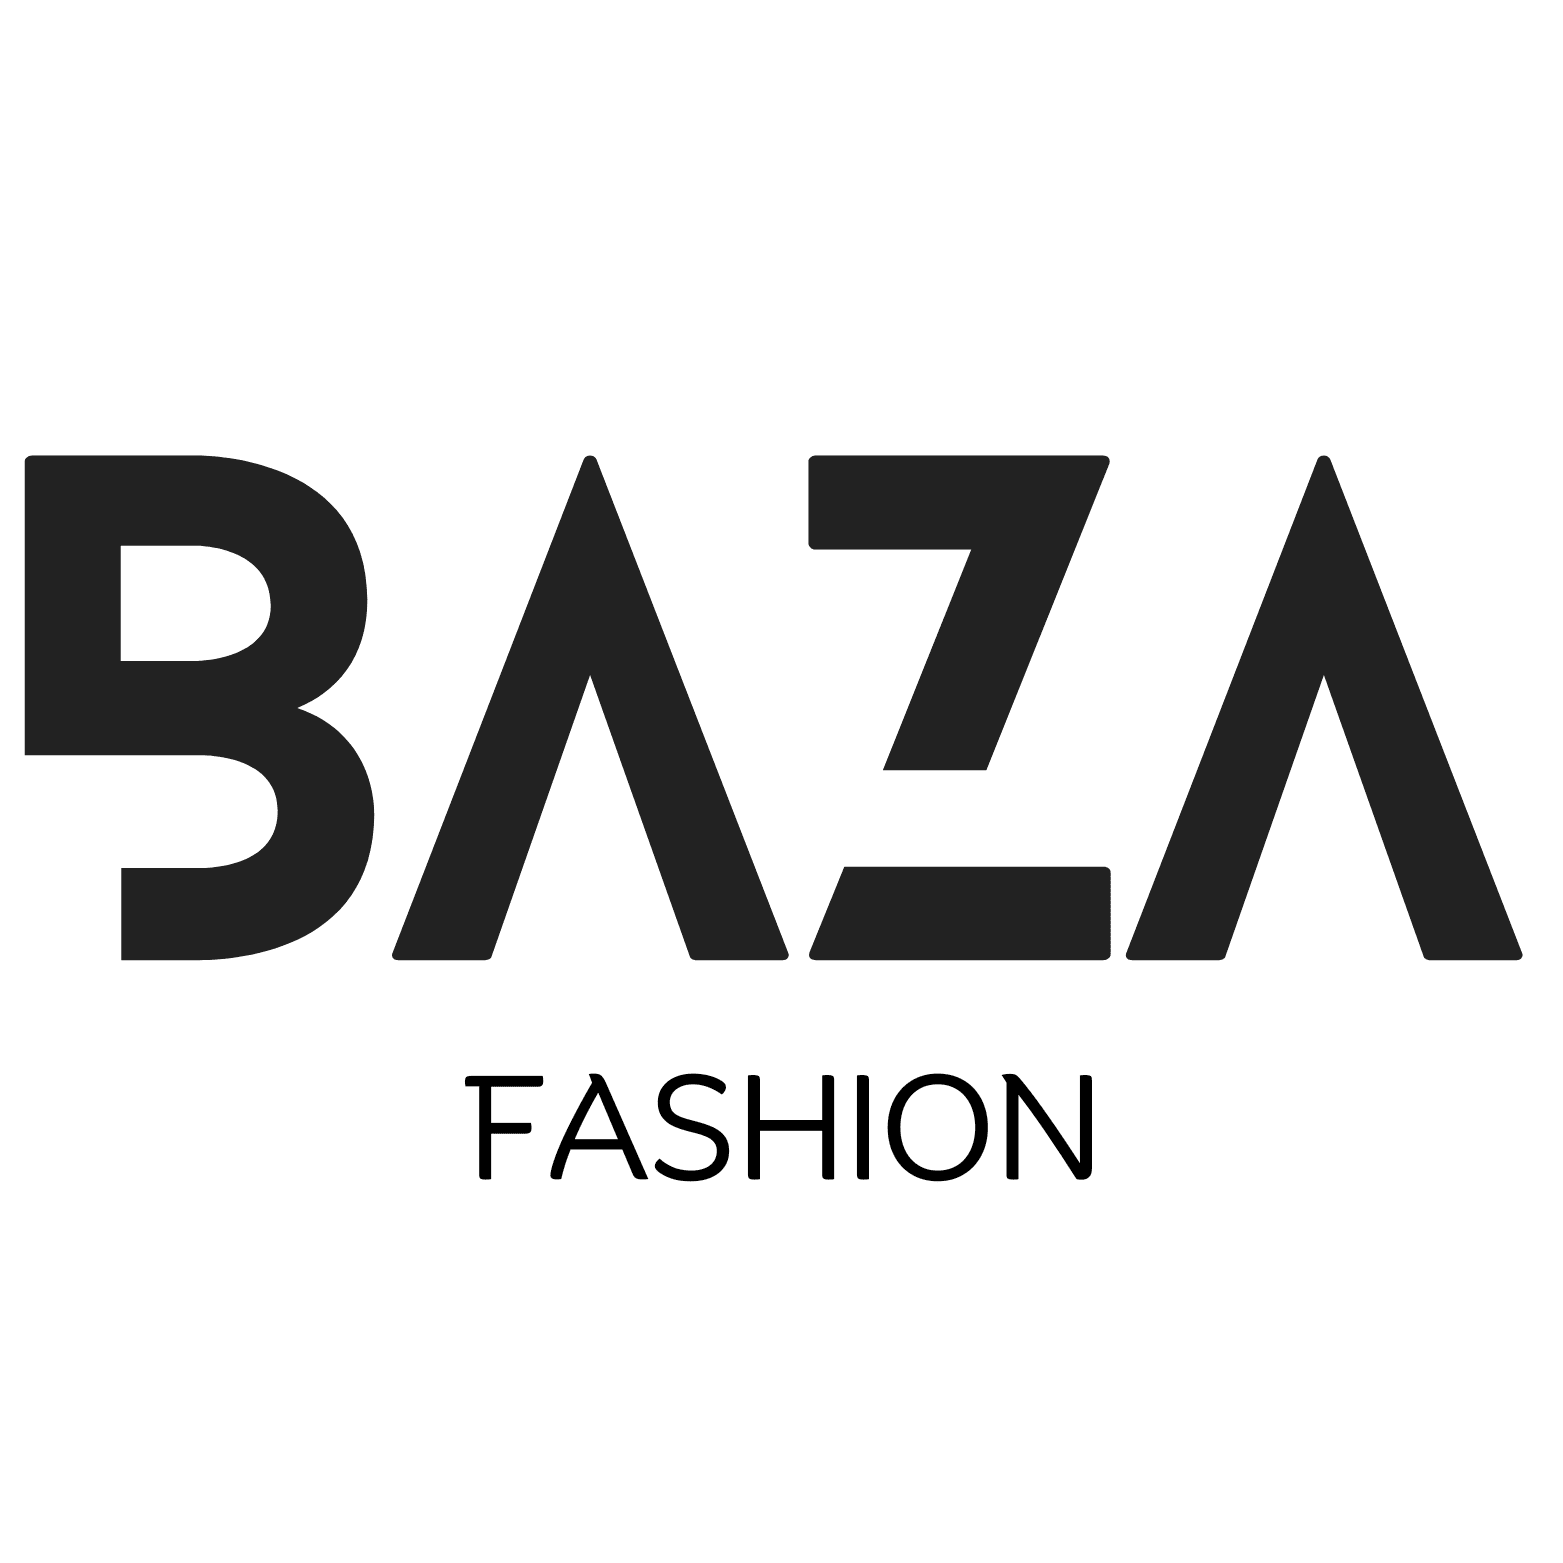 BAZA Fashion